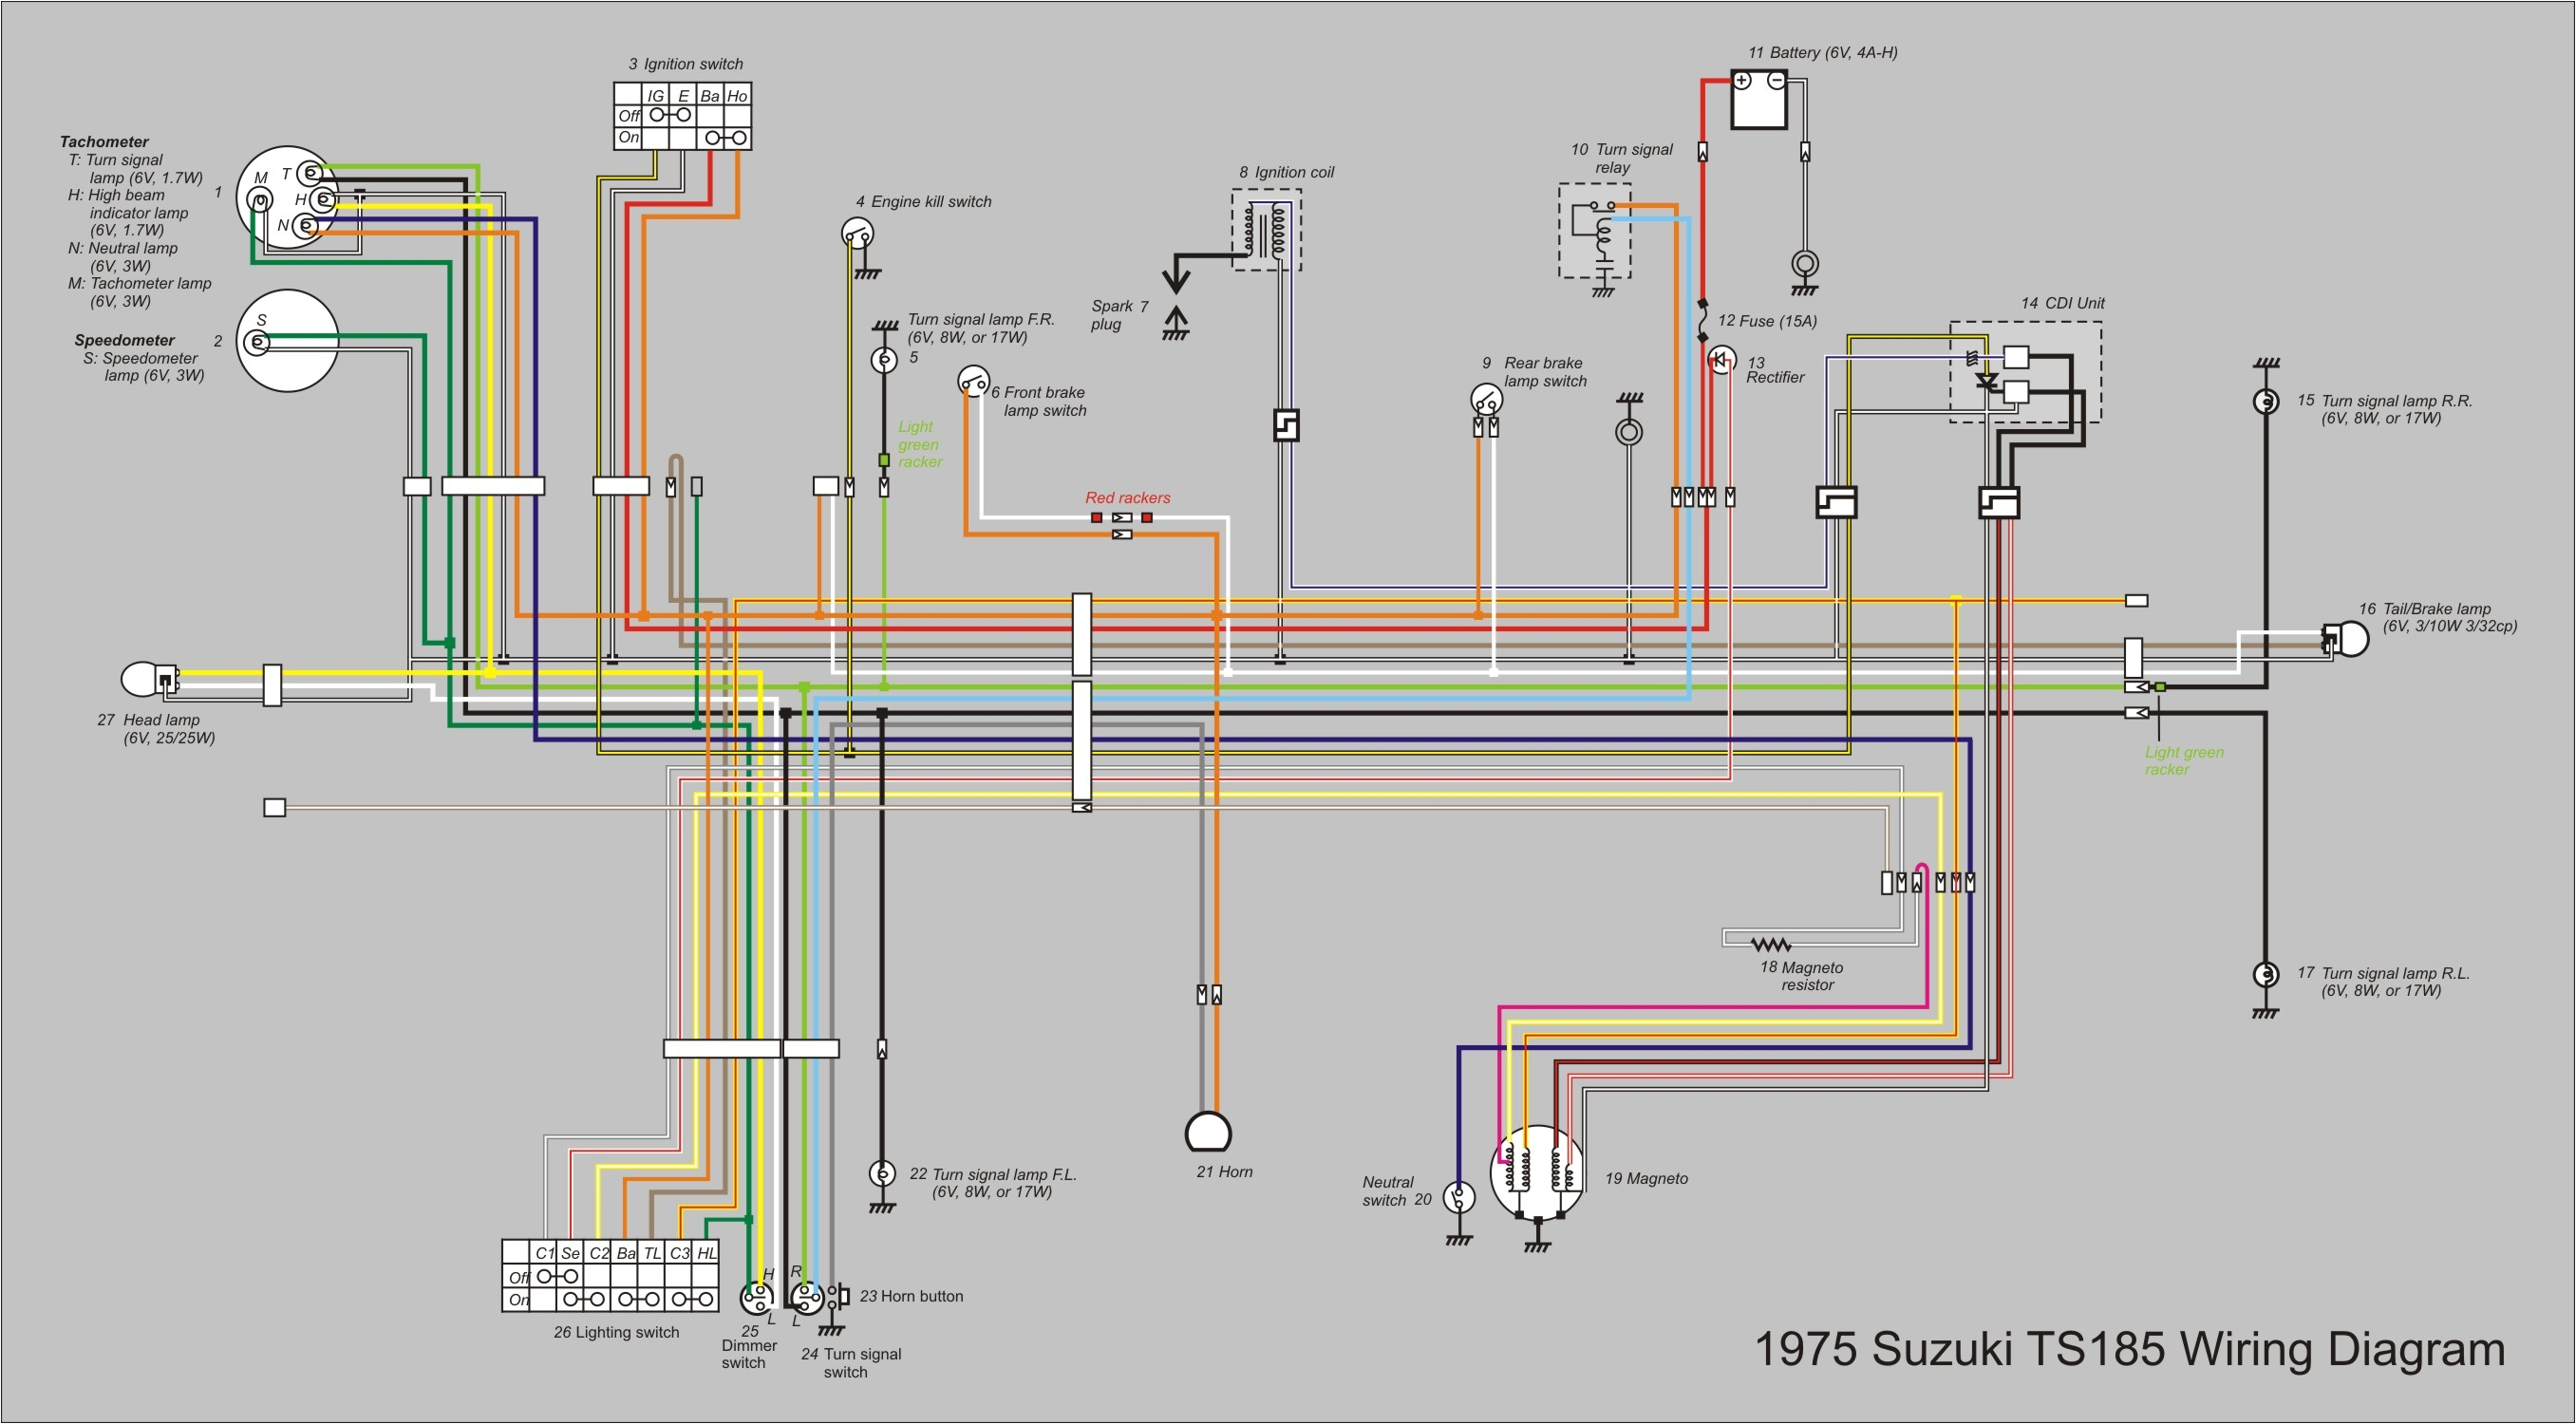 wiring diagram suzuki rc 100 wiring diagram sheetsuzuki kei wiring diagram wiring diagram wiring diagram suzuki